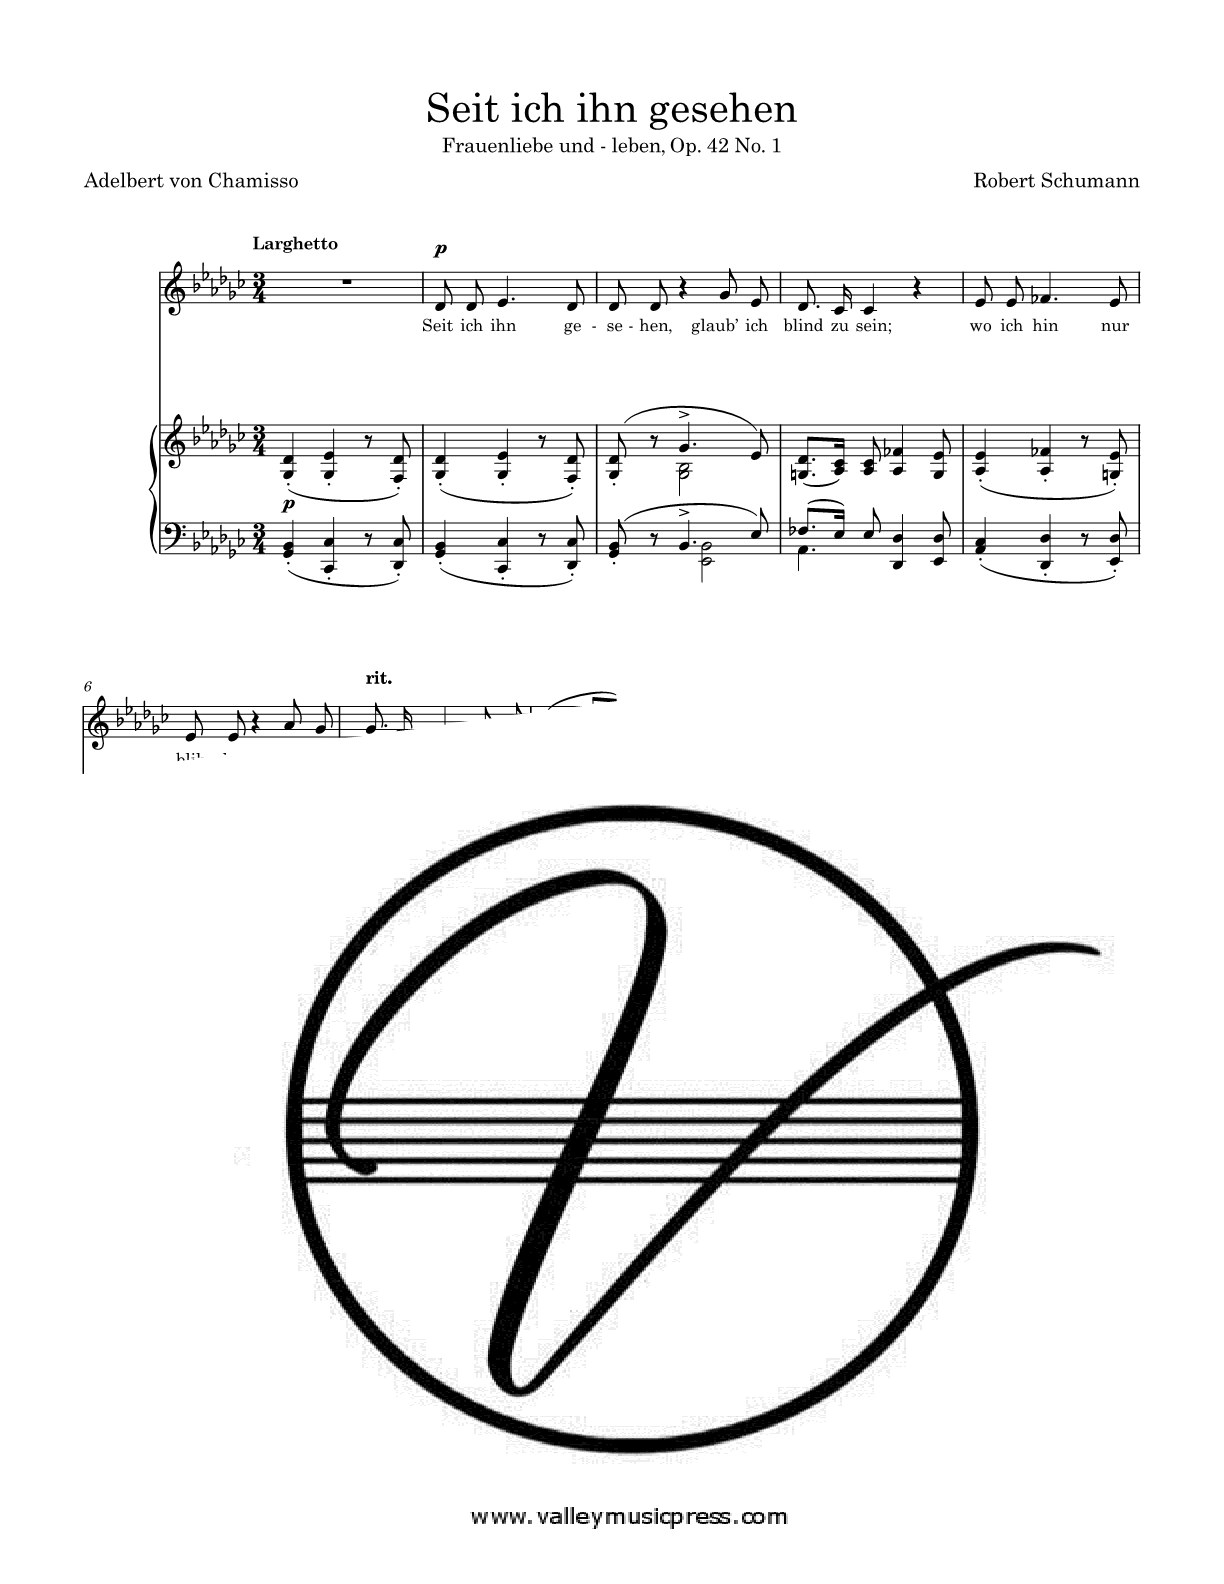 Schumann - Seit ich ihn gesehen Op. 42 No. 1 (Voice) - Click Image to Close